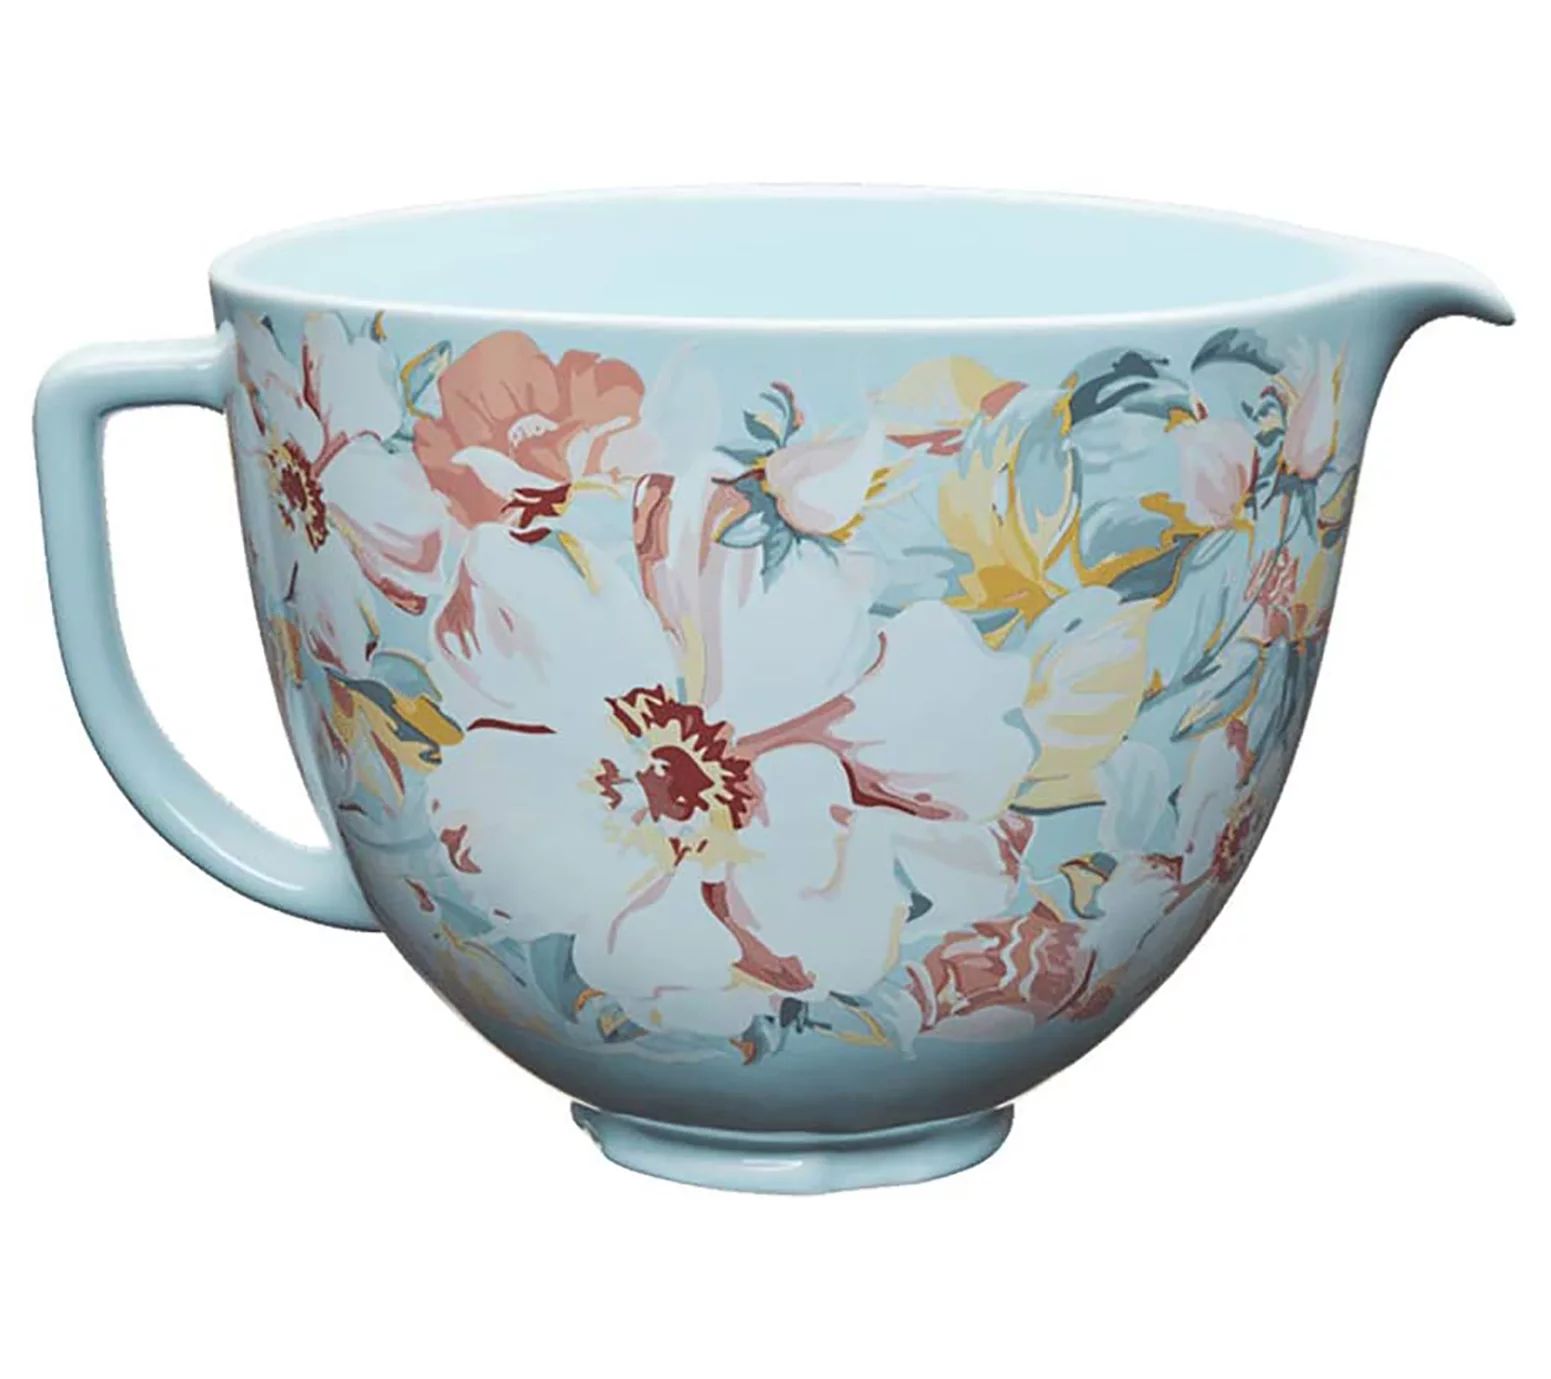 KitchenAid 5-quart White Gardenia Ceramic Bowl | QVC